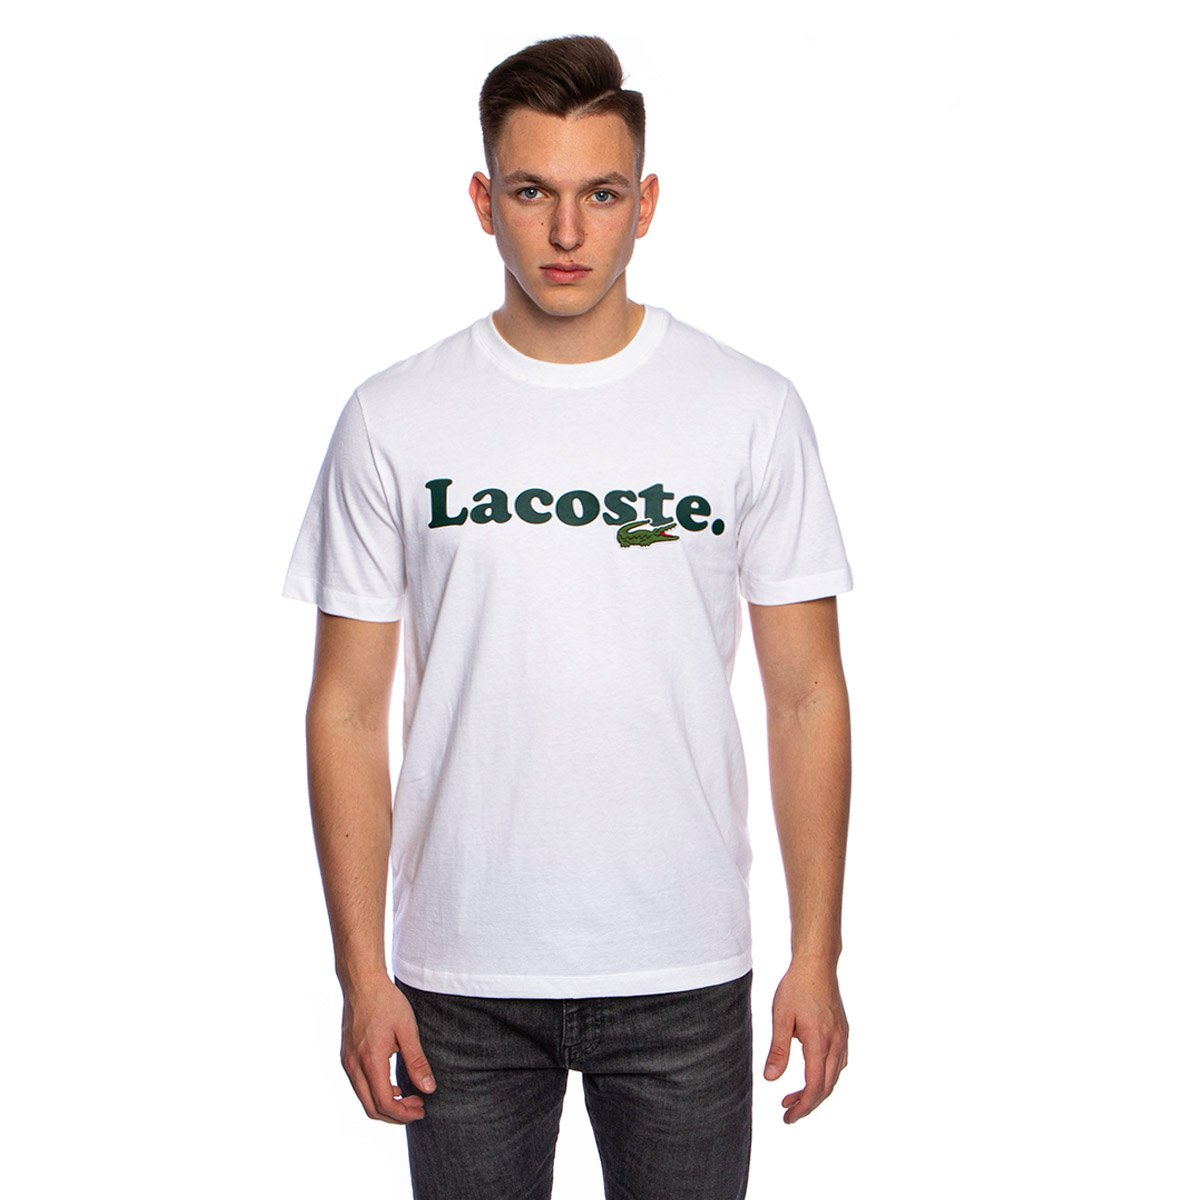 Lacoste Men's And Crocodile Branded Cotton T-shirt white | Bludshop.com